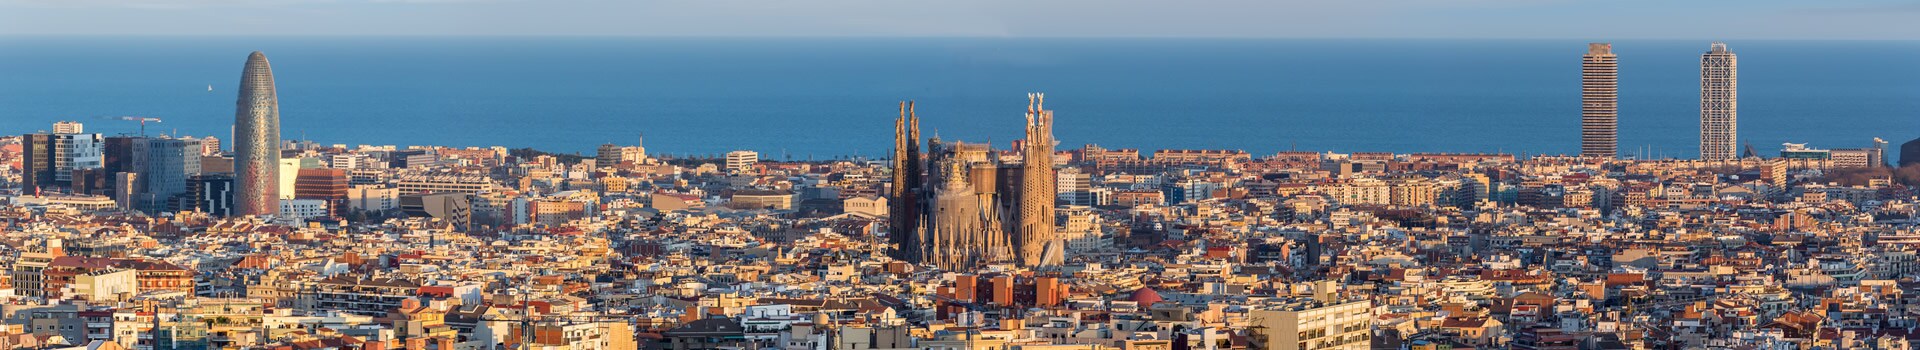 Viajes a Barcelona Vacaciones 134€ |